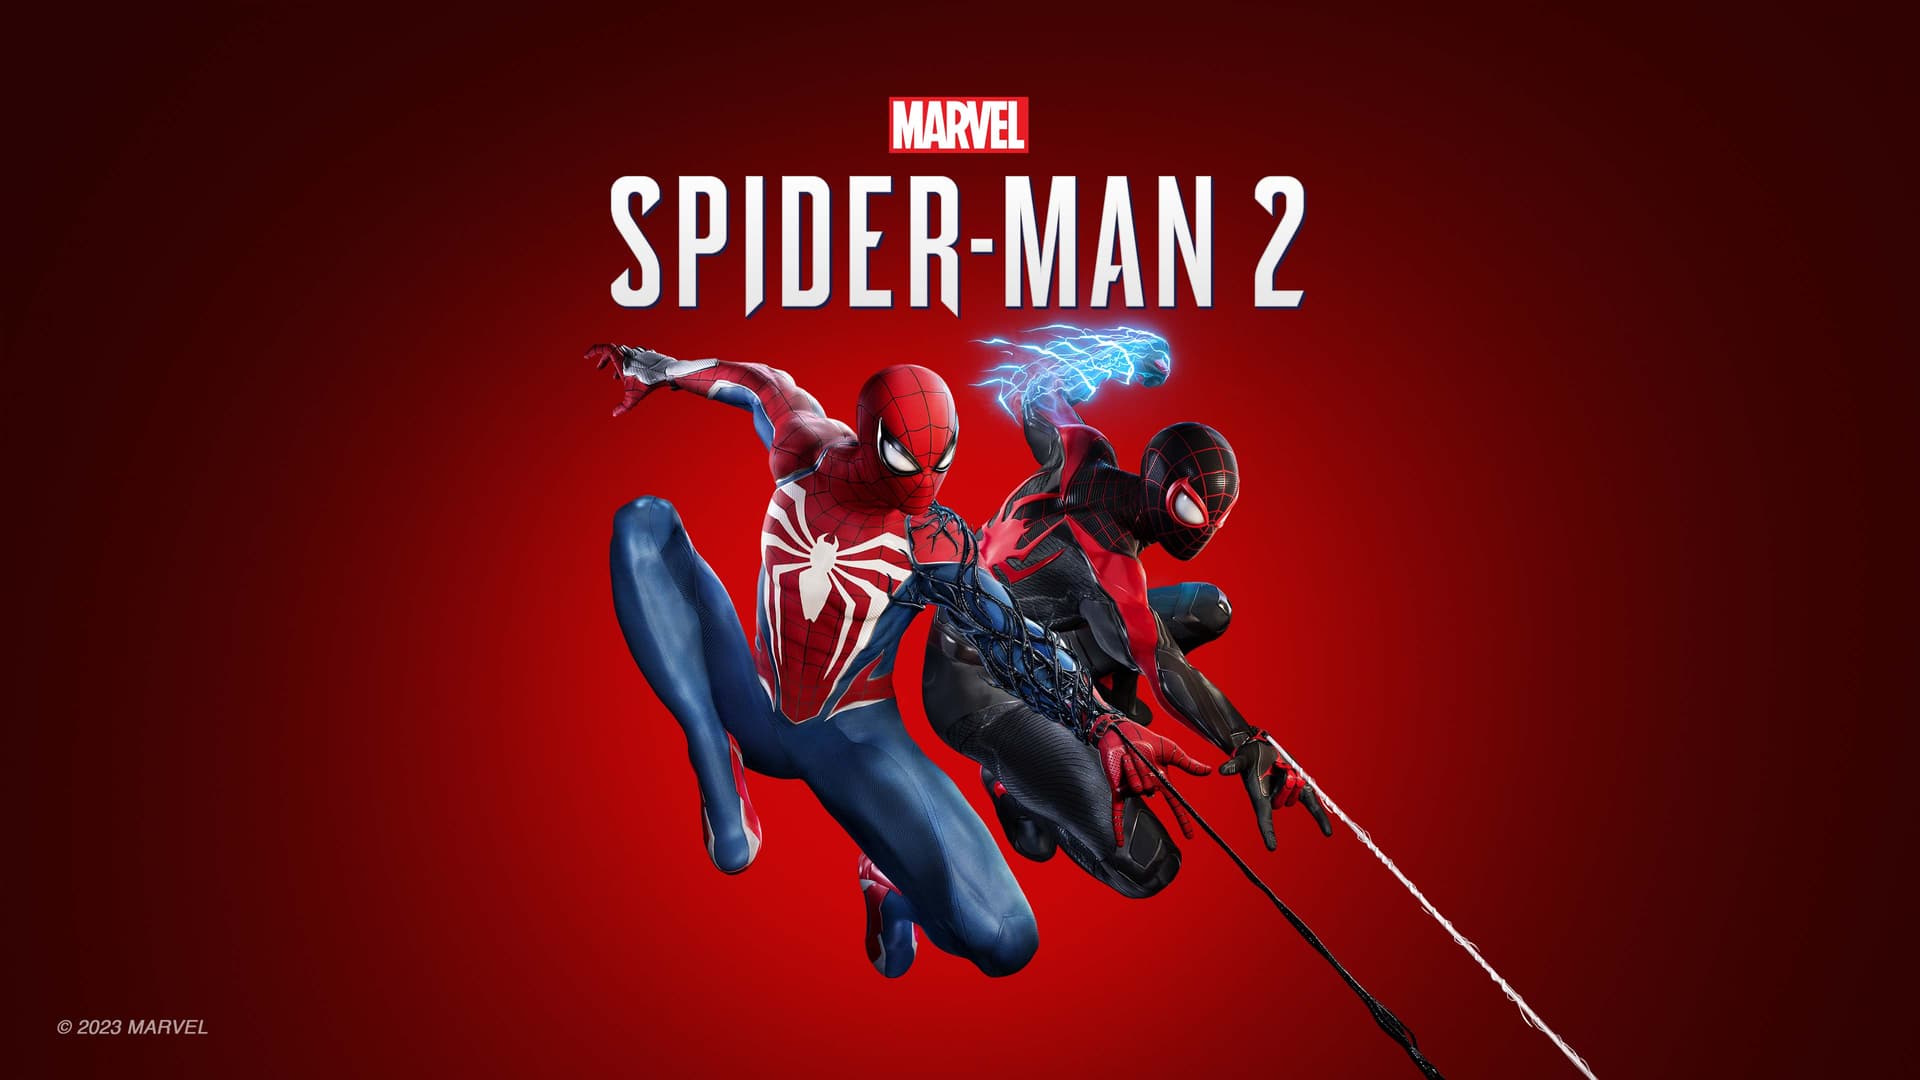 زمان پری لود بازی Marvel’s Spider-Man 2 مشخص شد